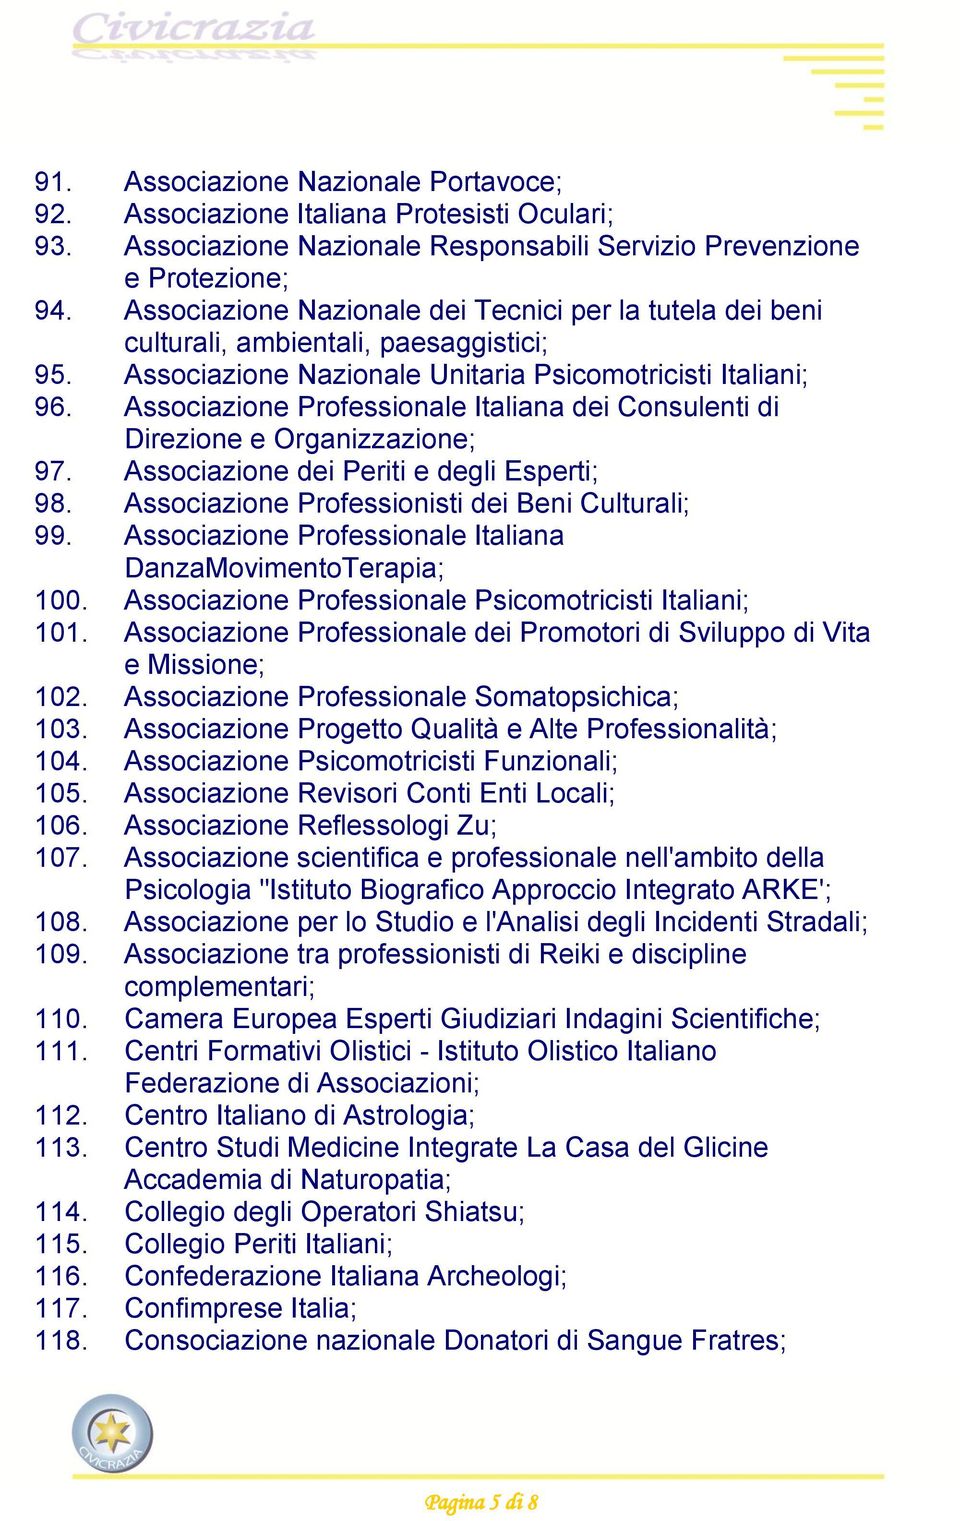 Associazione Professionale Italiana dei Consulenti di Direzione e Organizzazione; 97. Associazione dei Periti e degli Esperti; 98. Associazione Professionisti dei Beni Culturali; 99.